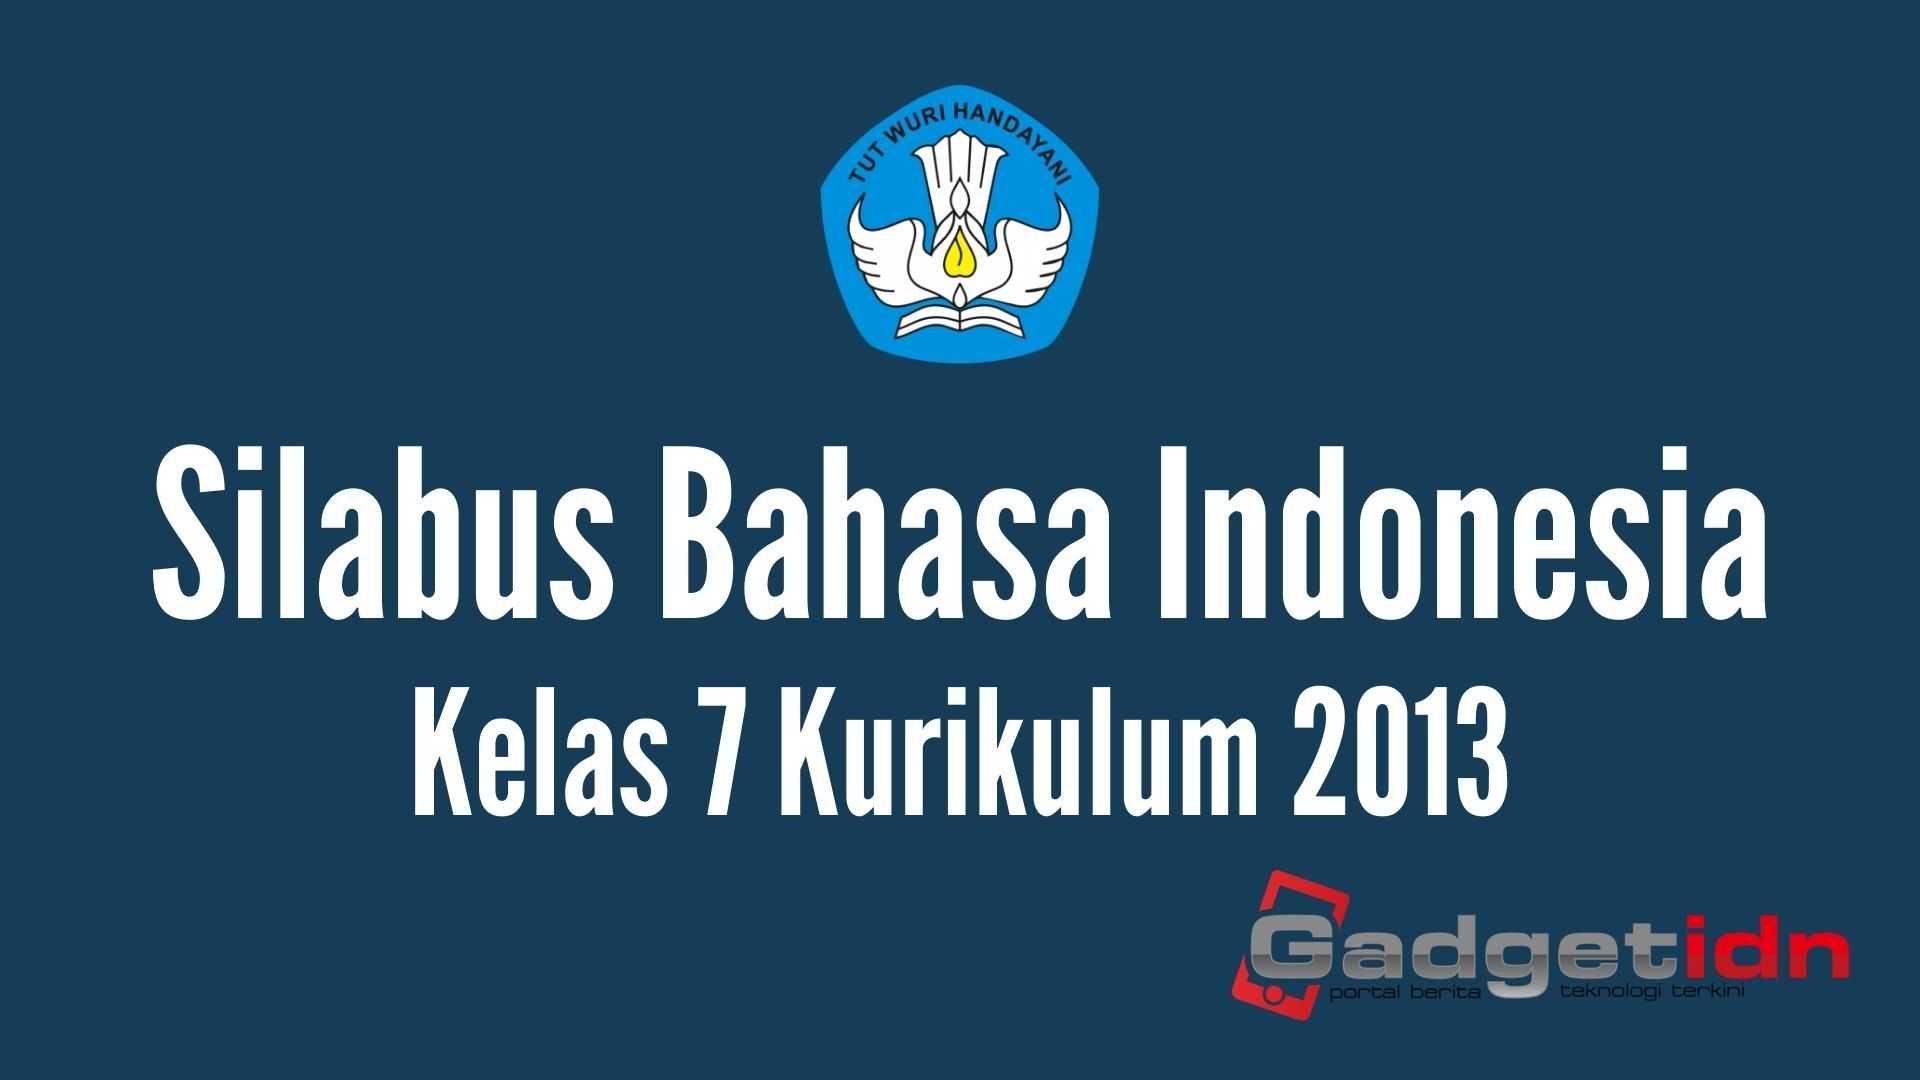 Download Silabus Bahasa Indonesia Kelas 7 Kurikulum 2013